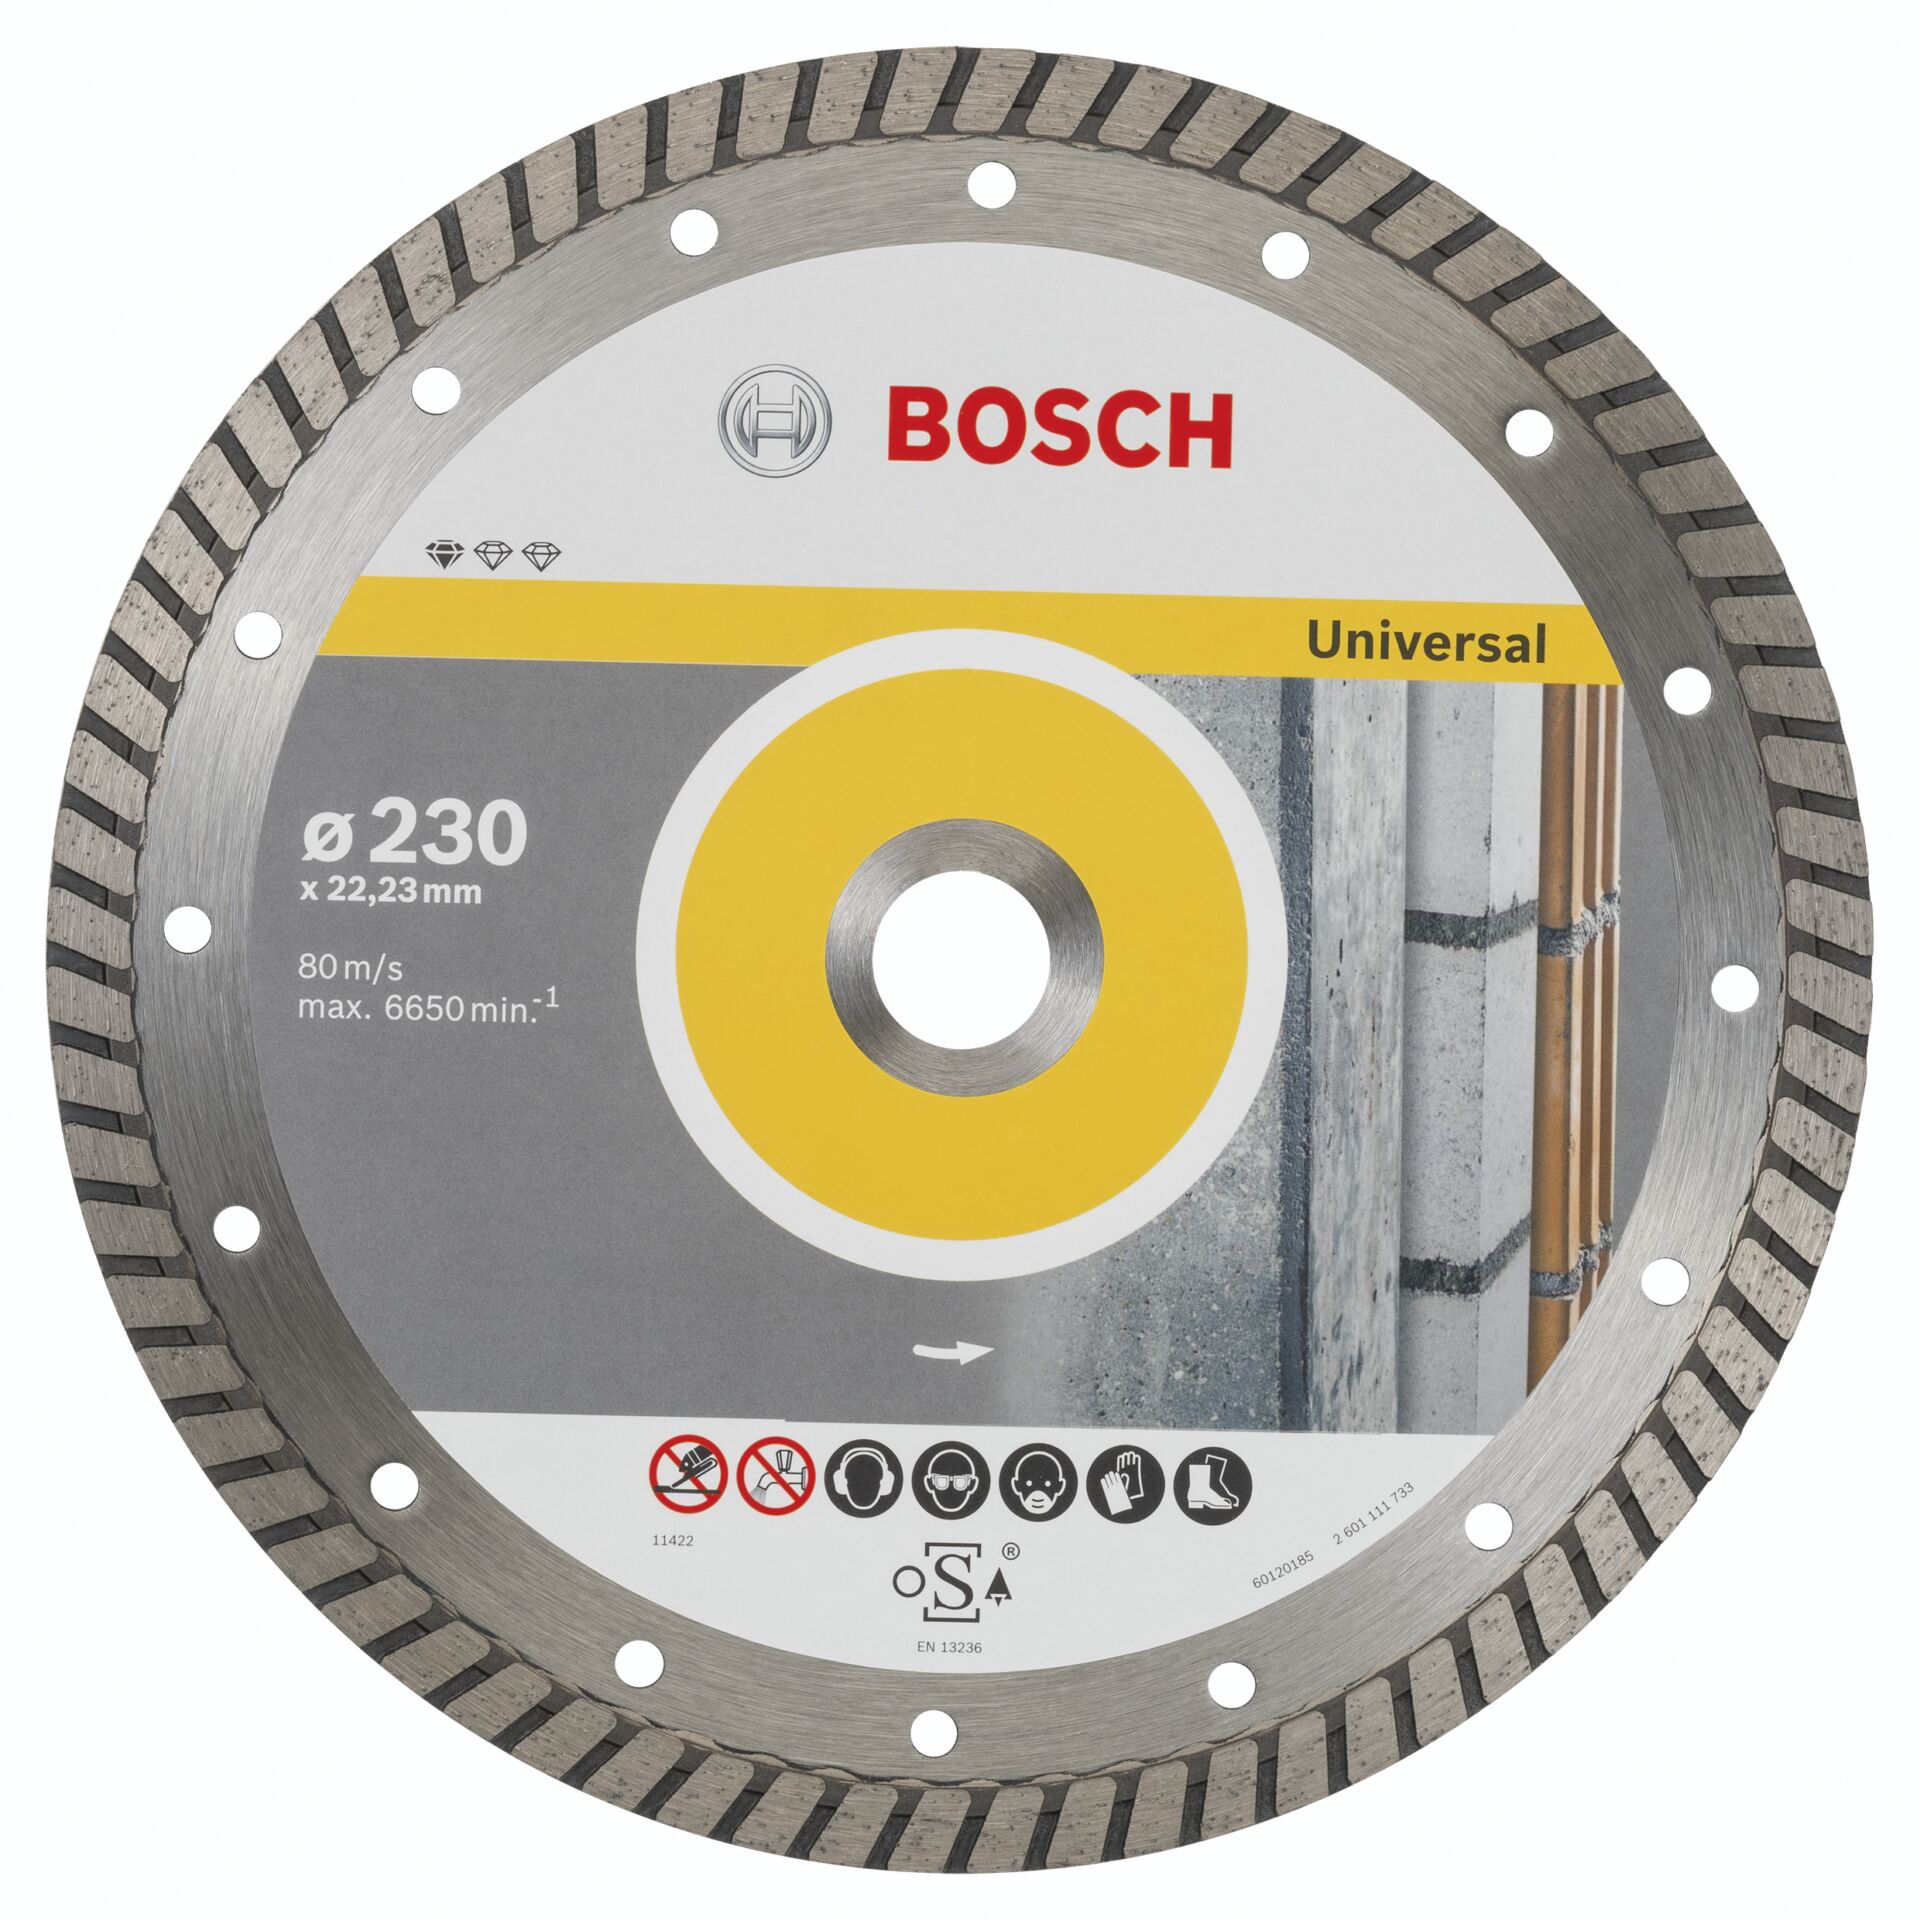 Bosch DIA-TS 230x22,23 Std. Universal Turbo